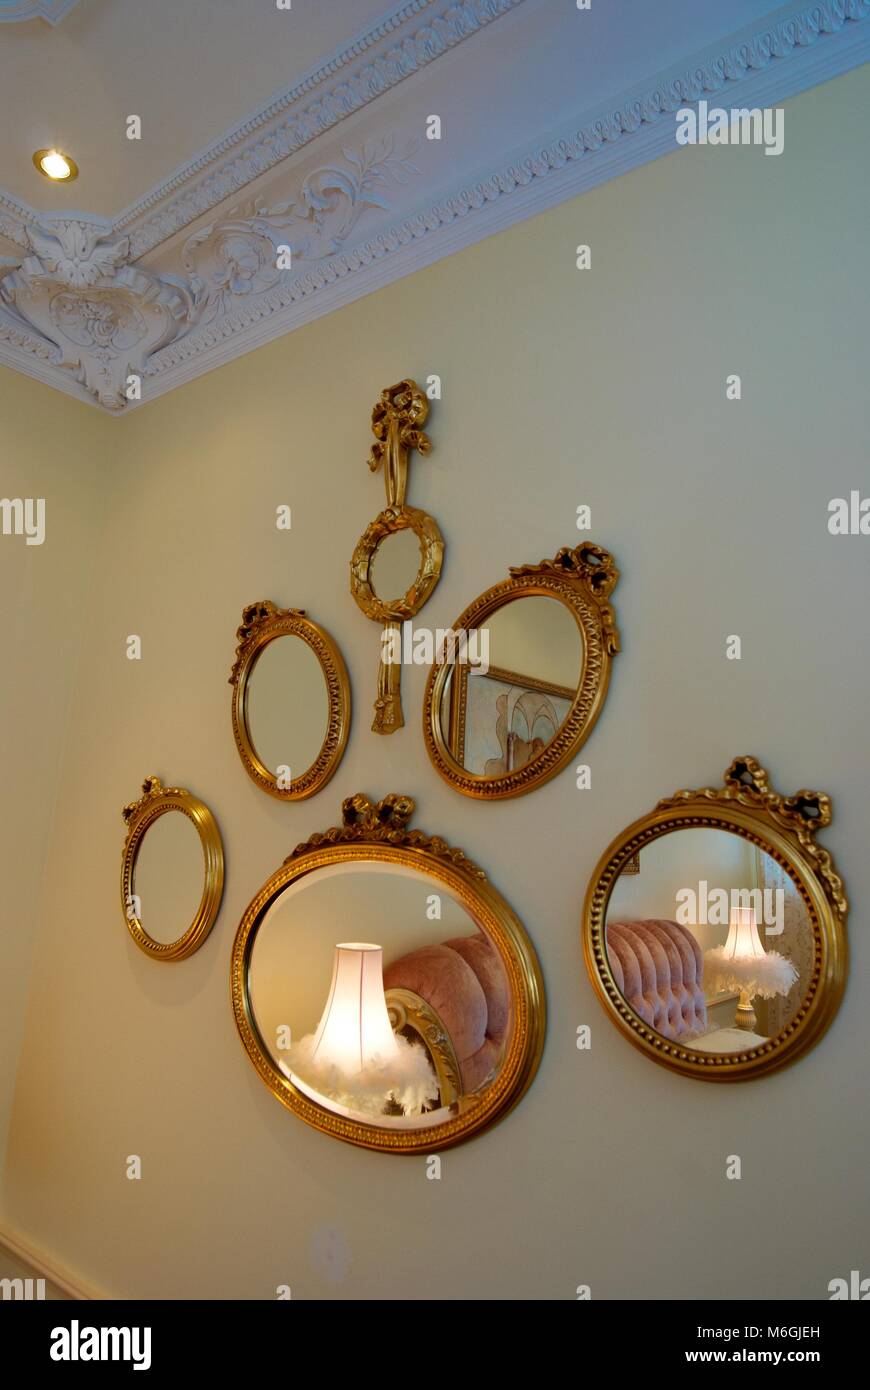 Die Zusammensetzung ovaler Spiegel in einem goldenen Rahmen. Klassischer Innenraum Stockfoto